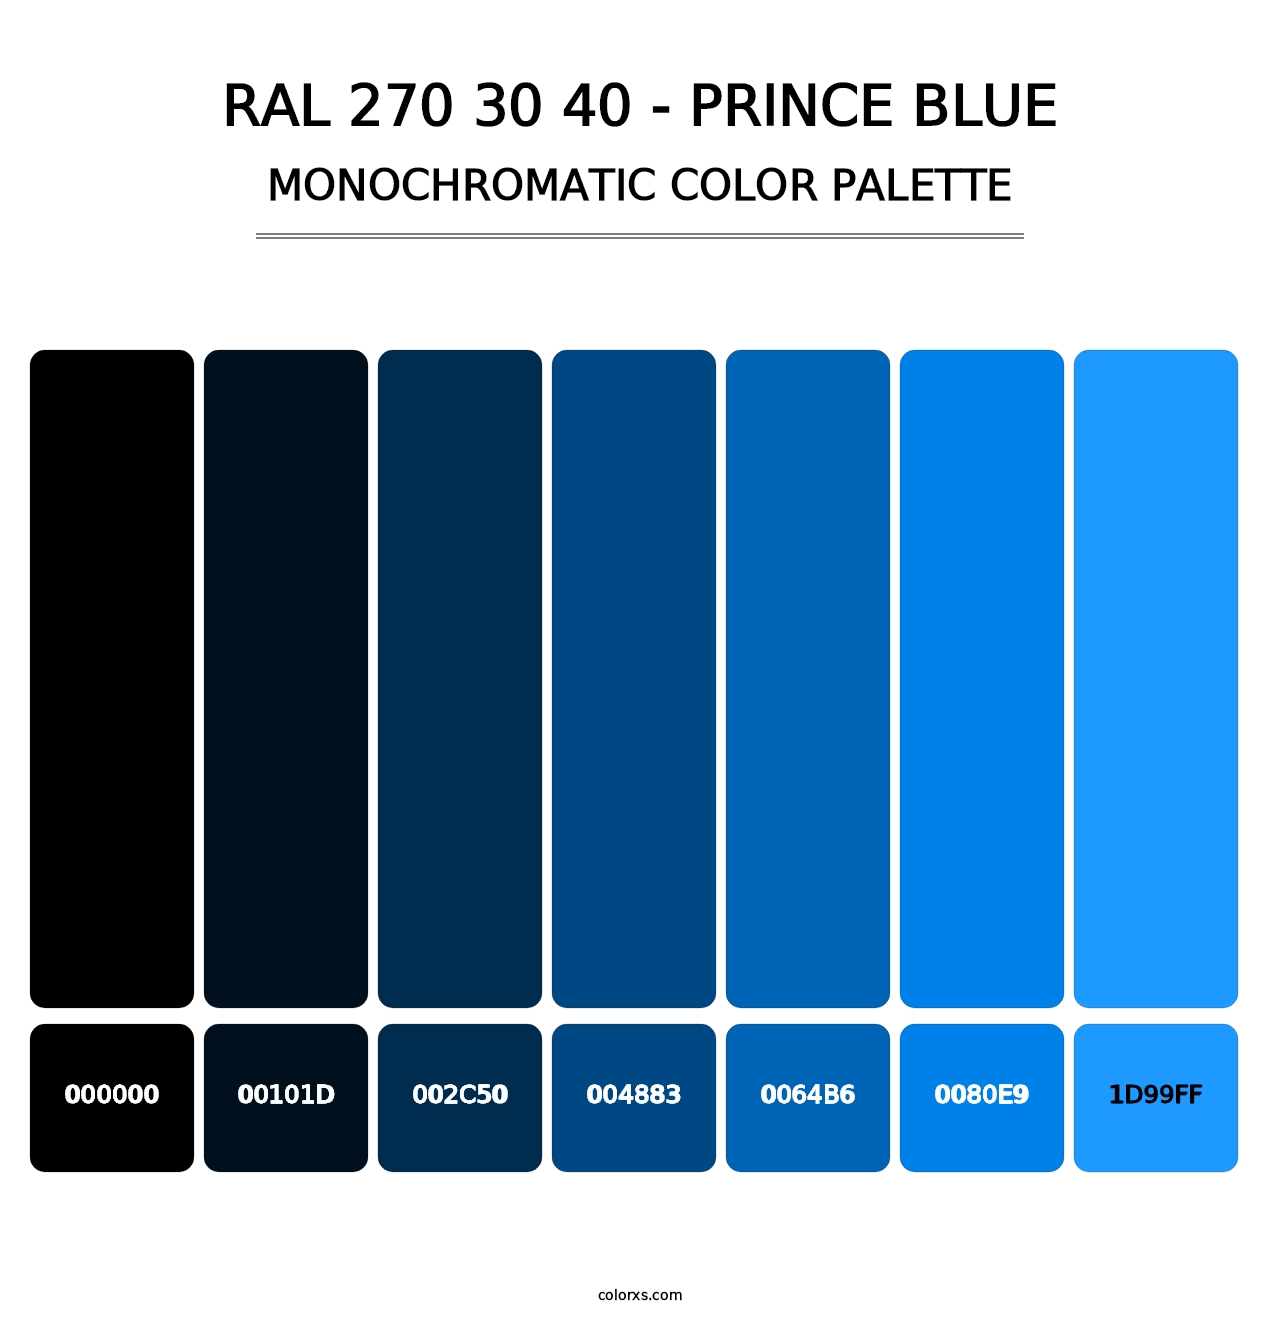 RAL 270 30 40 - Prince Blue - Monochromatic Color Palette